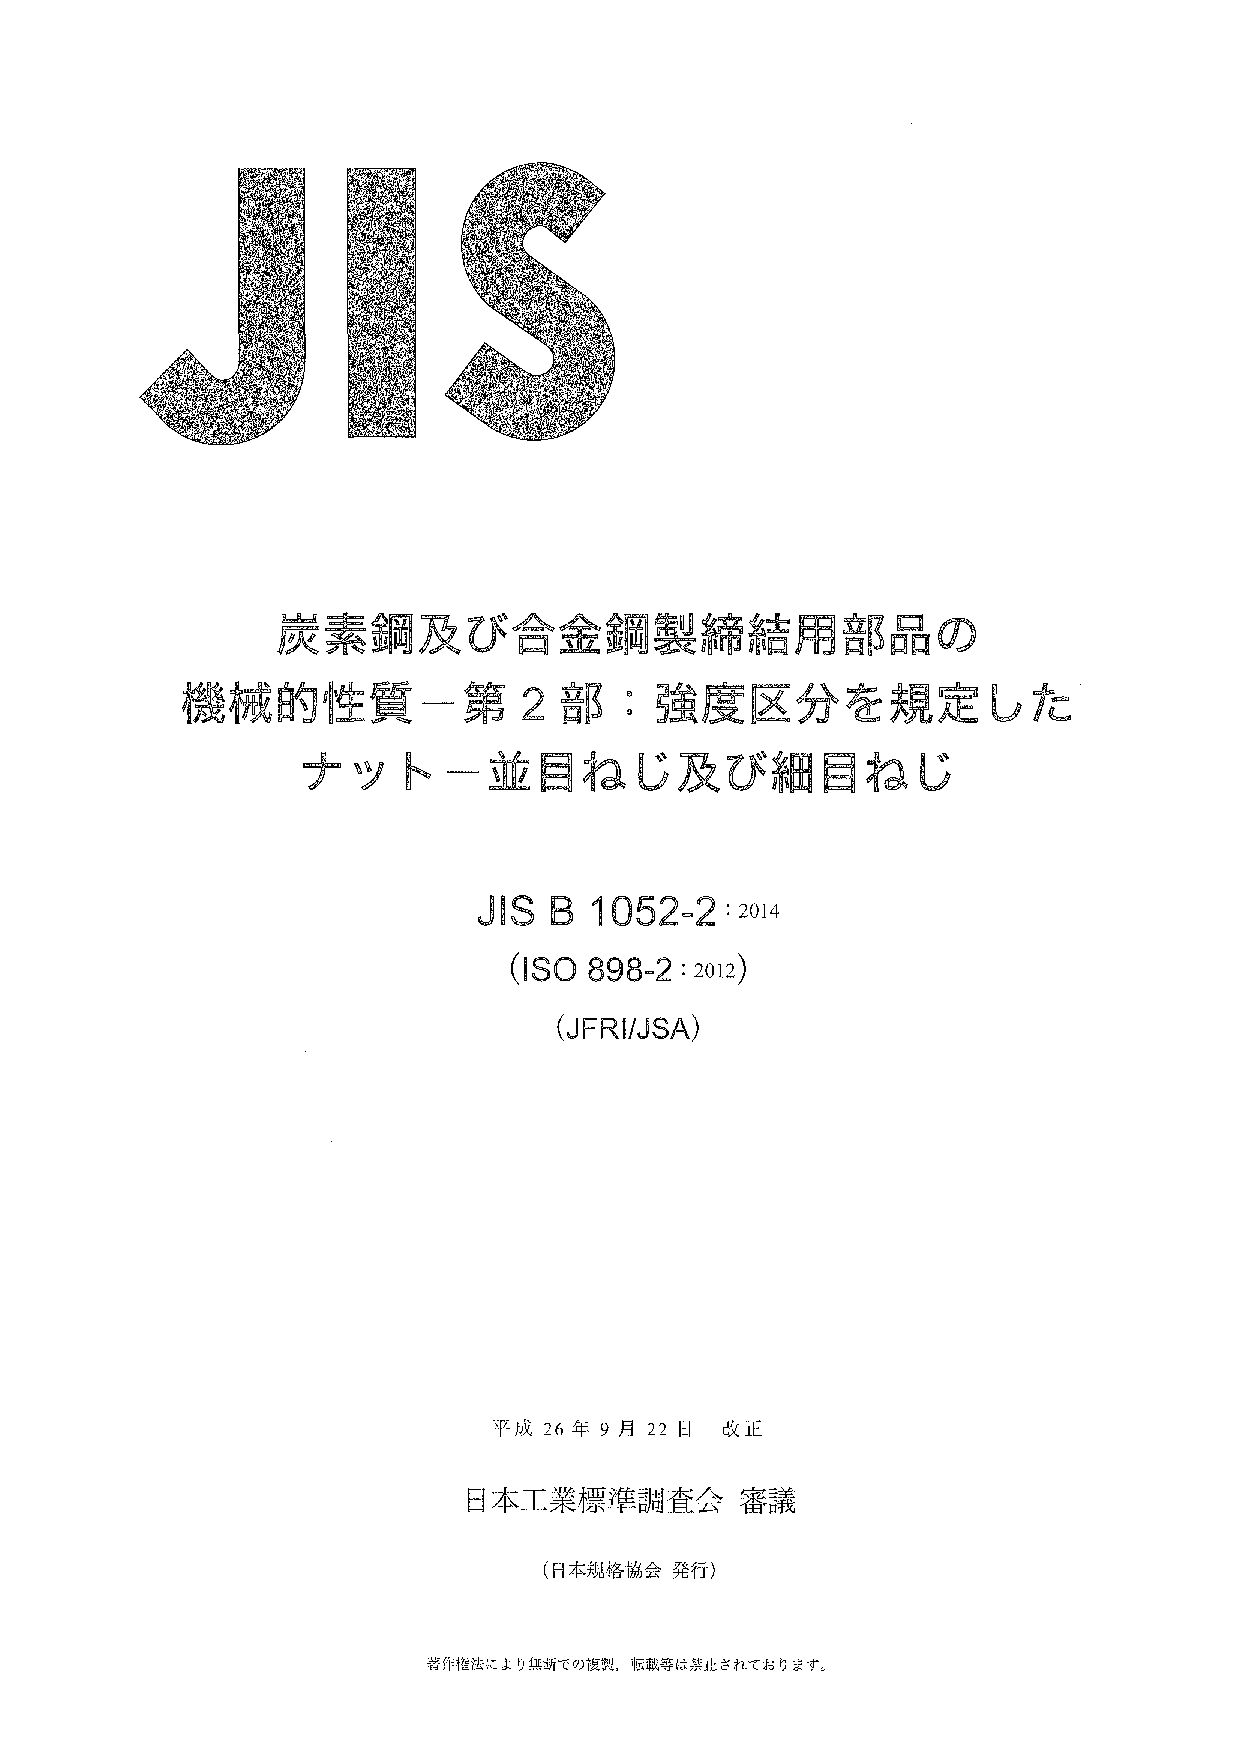 JIS B 1052-2:2014封面图